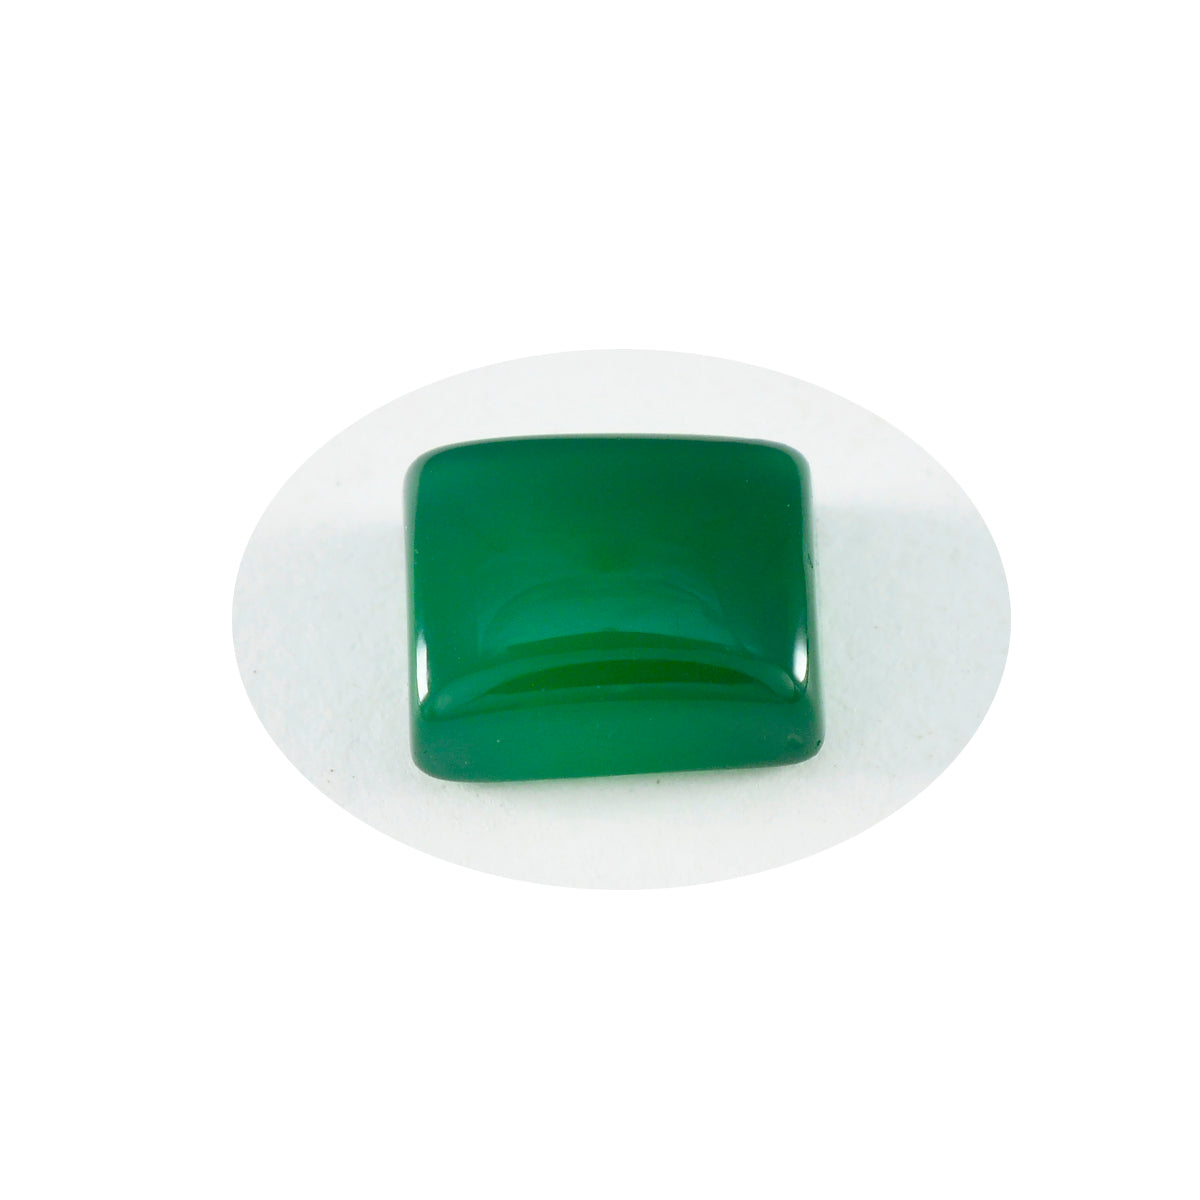 Riyogems 1 Stück grüner Onyx-Cabochon, 9 x 11 mm, achteckige Form, hübscher Qualitäts-Edelstein